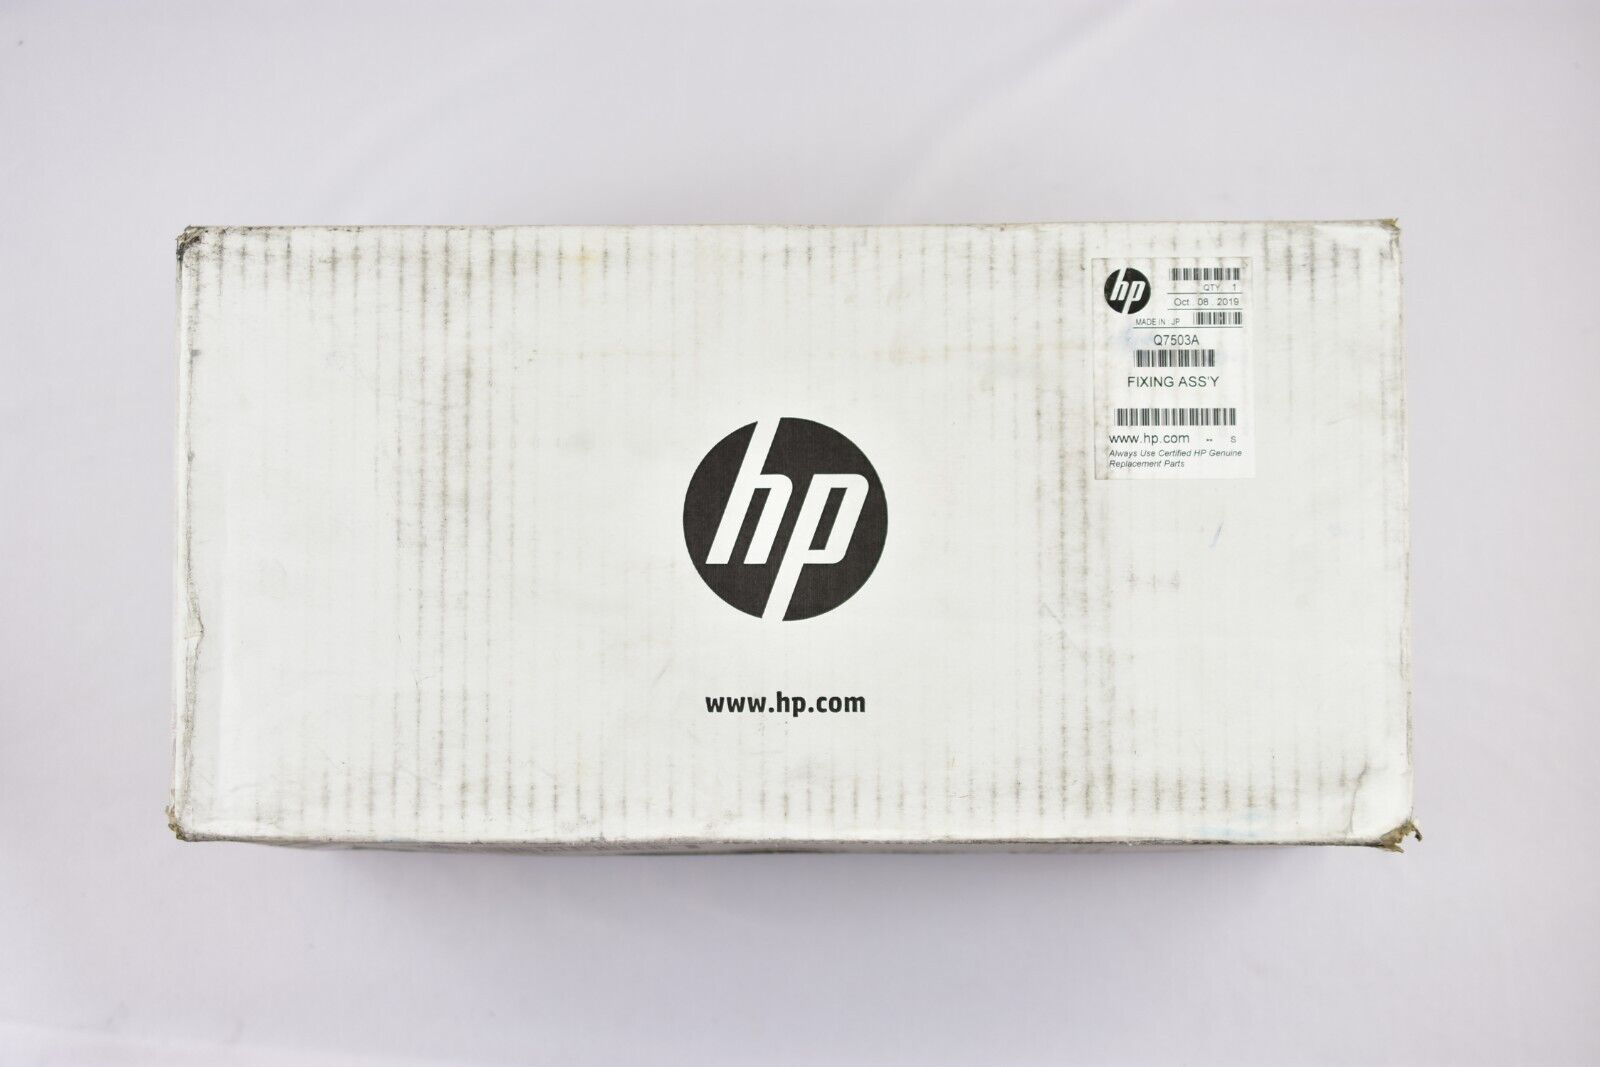 HP Genuine Q7503A Fuser Kit 220V for HP Color LaserJet 4700 NEW IN OPEN BOX